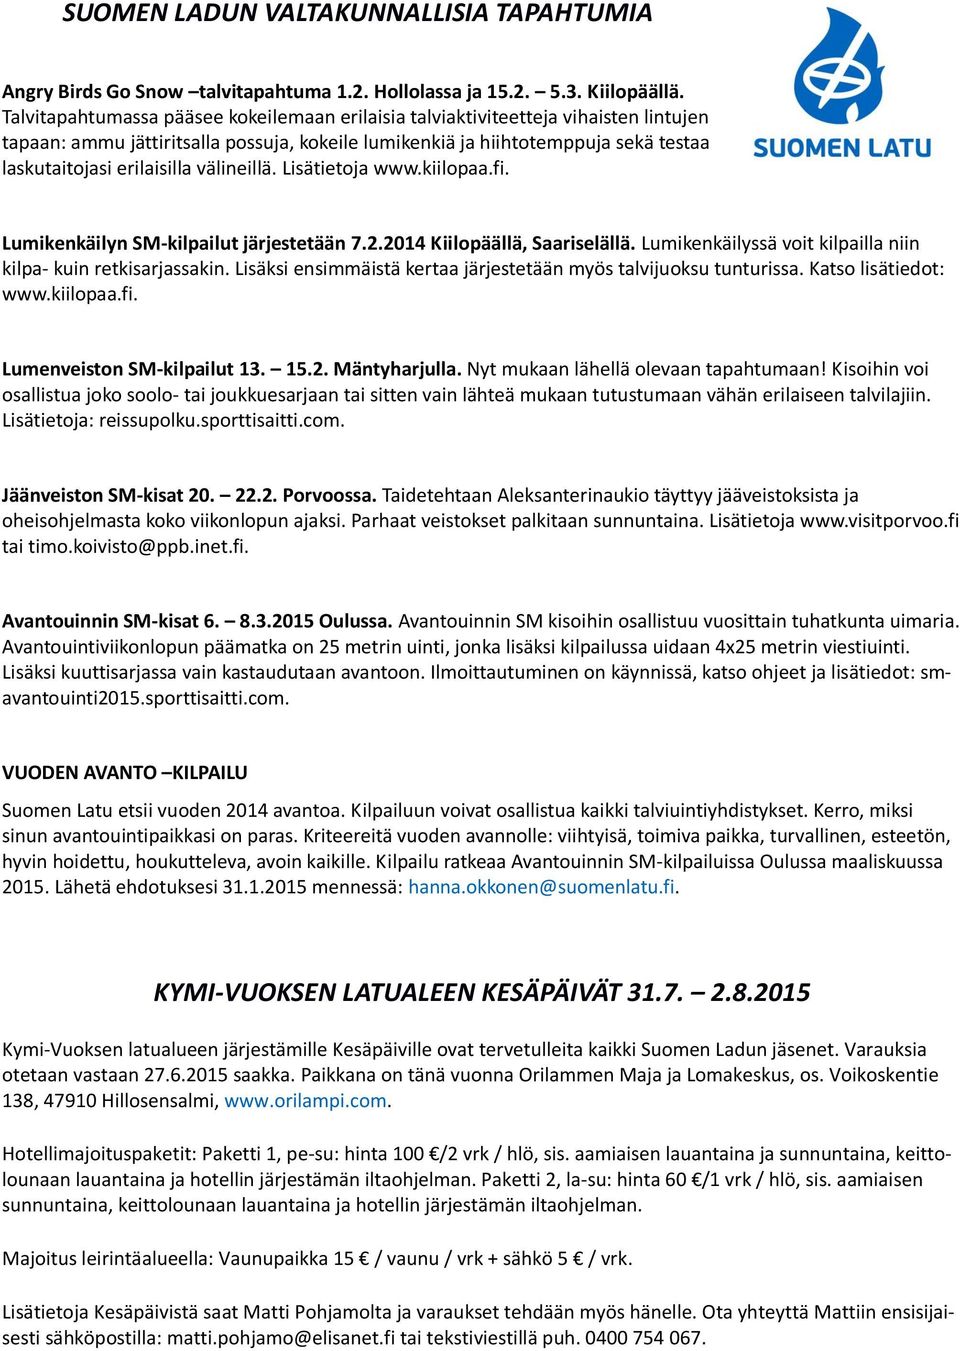 välineillä. Lisätietoja www.kiilopaa.fi. Lumikenkäilyn SM-kilpailut järjestetään 7.2.2014 Kiilopäällä, Saariselällä. Lumikenkäilyssä voit kilpailla niin kilpa- kuin retkisarjassakin.